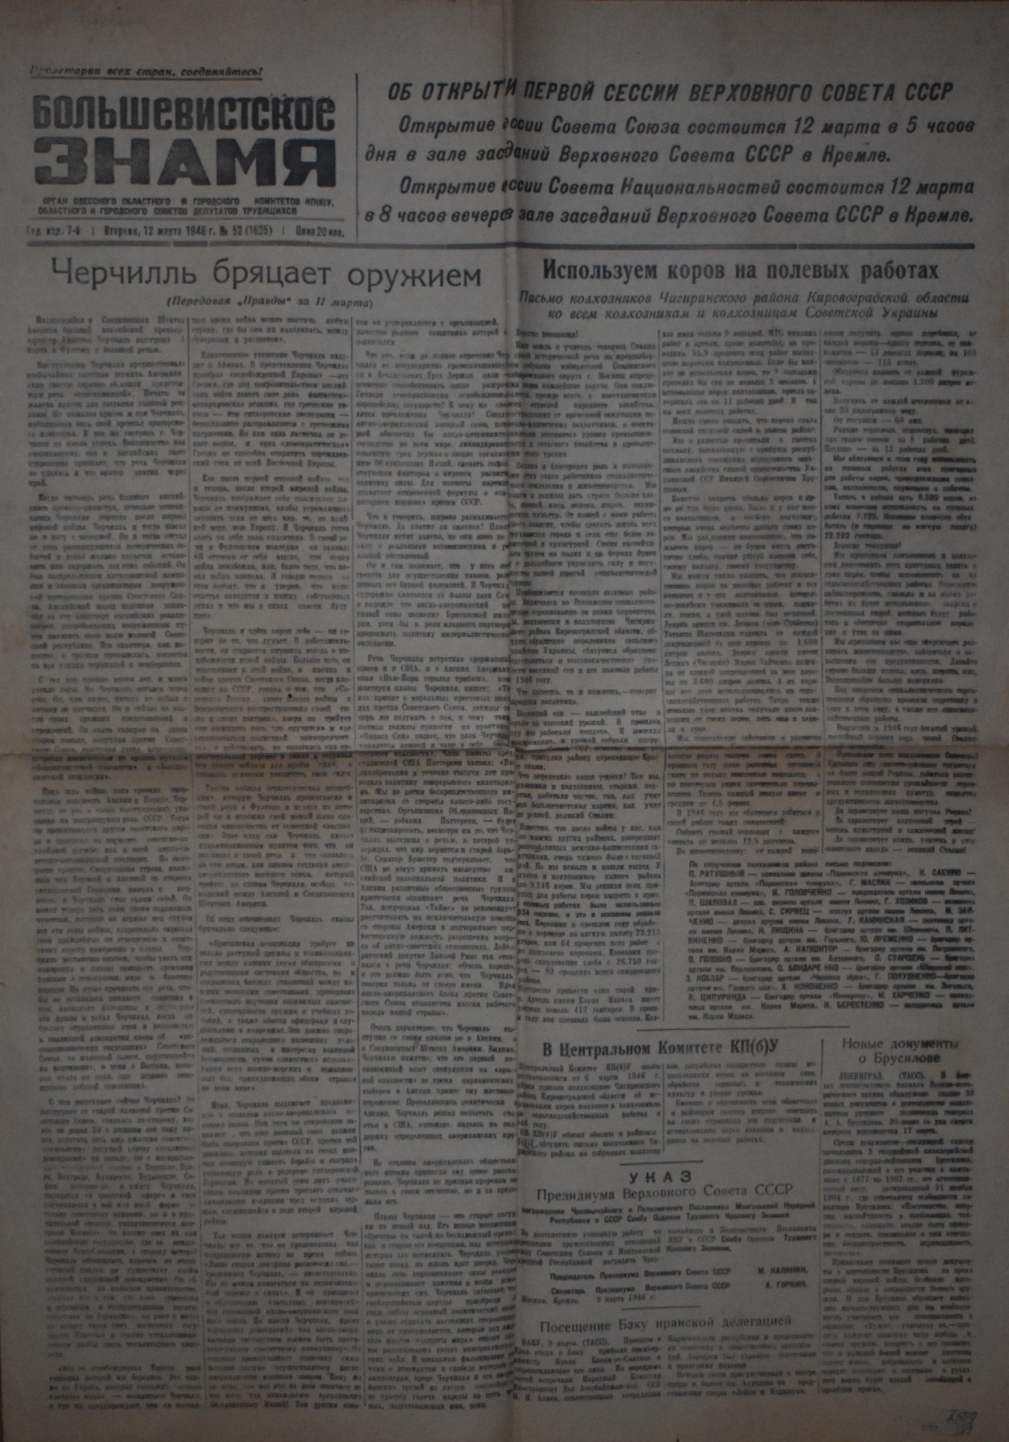 Газета "Большевистское знамя" № 52 (1625), вівторок 12 березня 1946 року